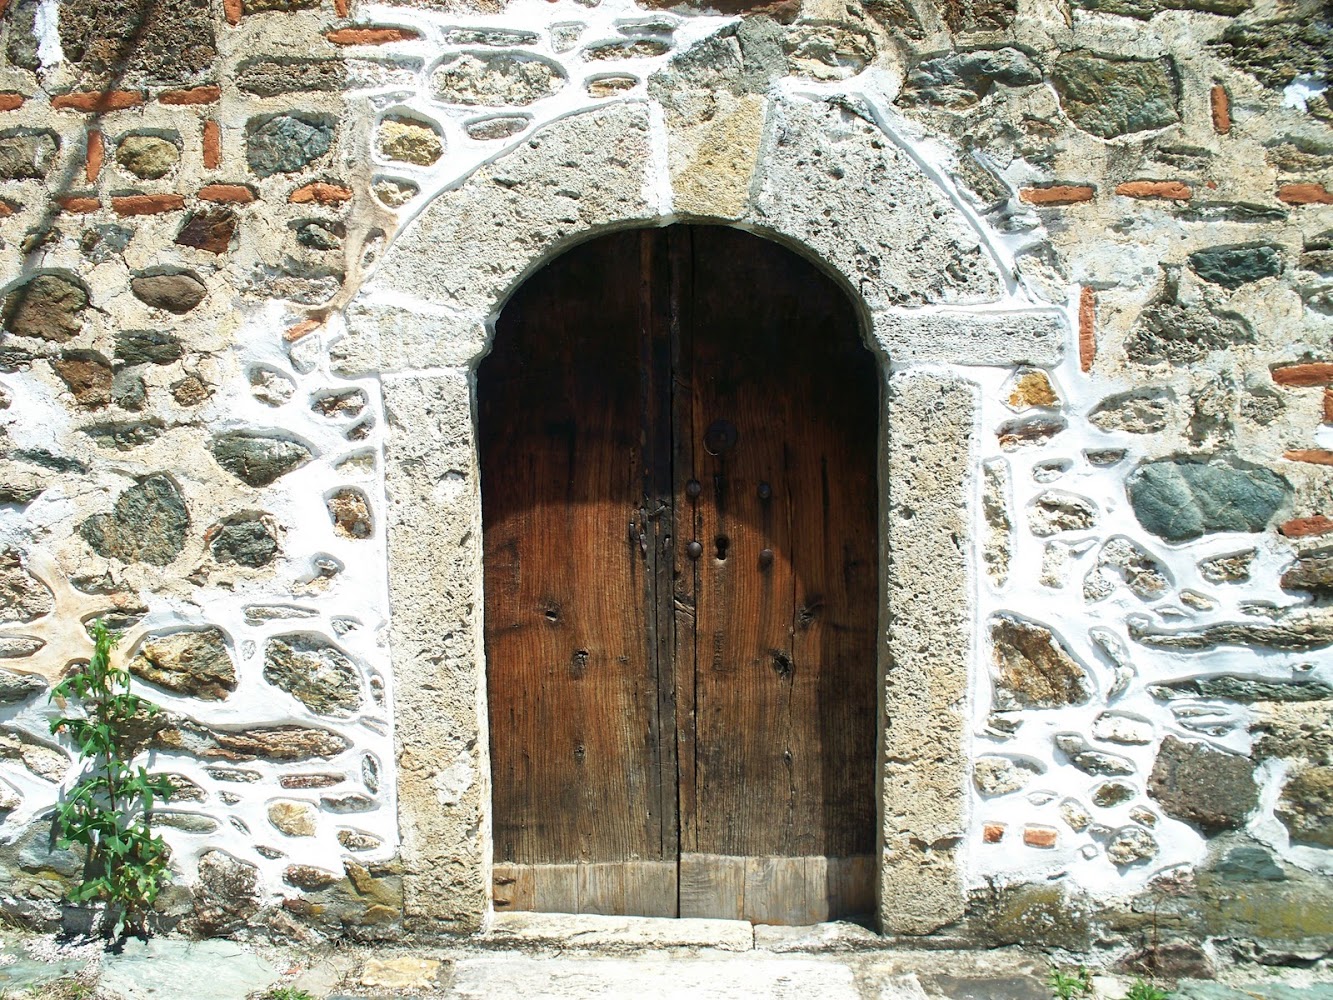 An Open Door